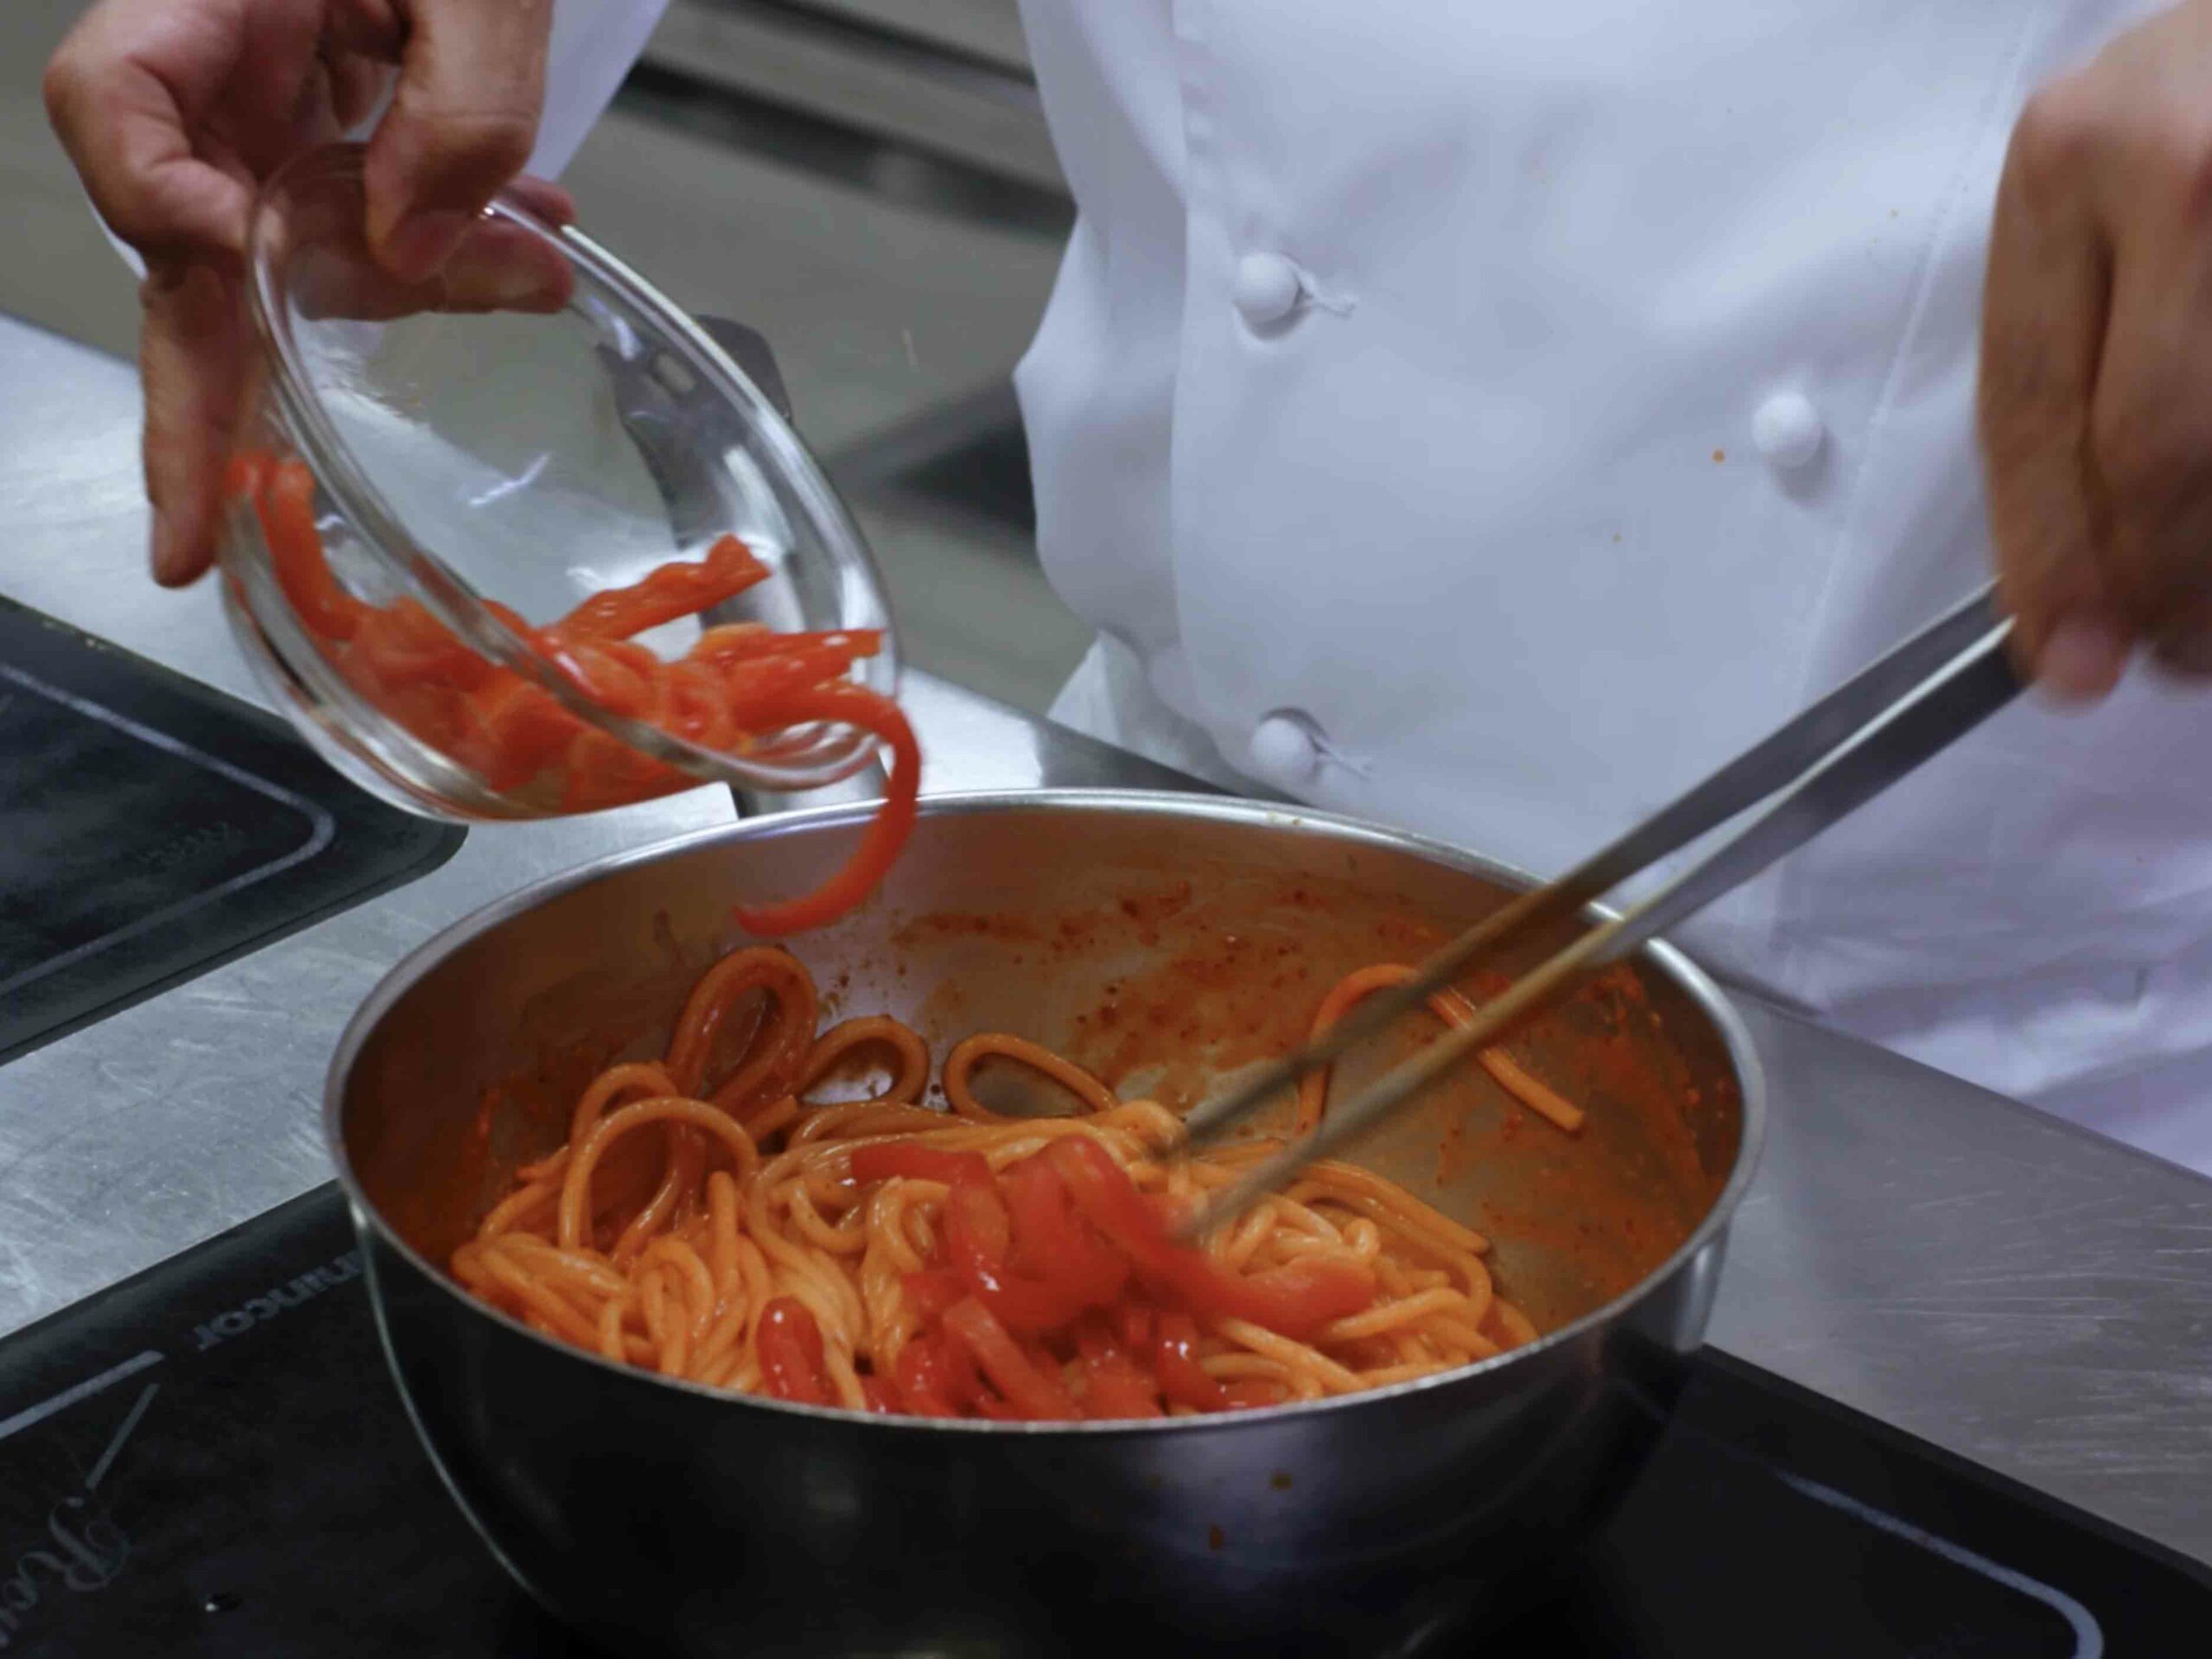 Spaghettoni grandi De Cecco all’aglione con peperoni, purea di aglione e guanciale croccante